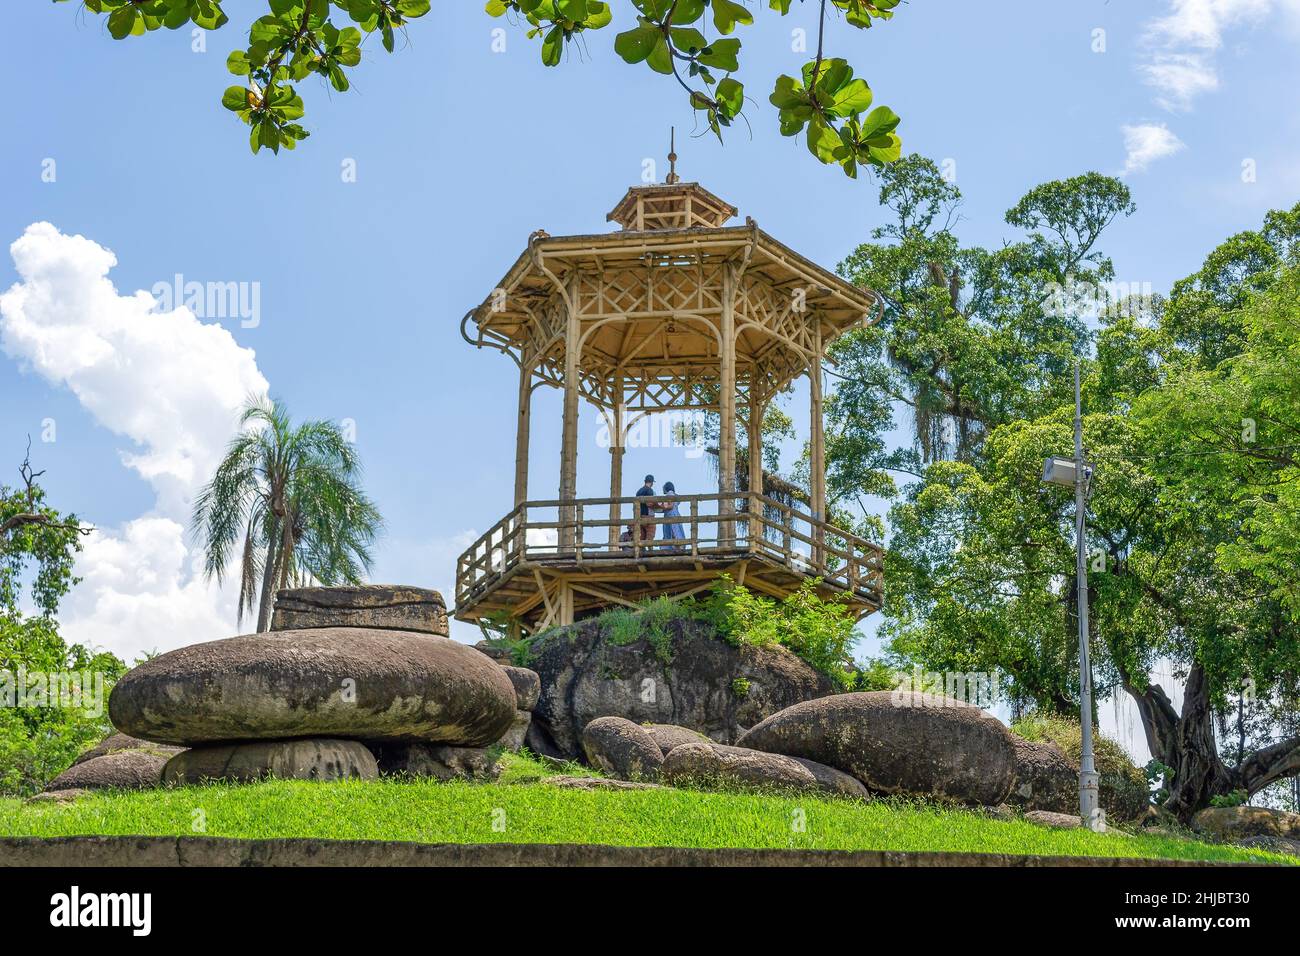 Ein alter Pavillon in Quinta da Boa Vista, einem öffentlichen Park von großer historischer Bedeutung, der sich im Viertel Sao Cristovao befindet. Stockfoto